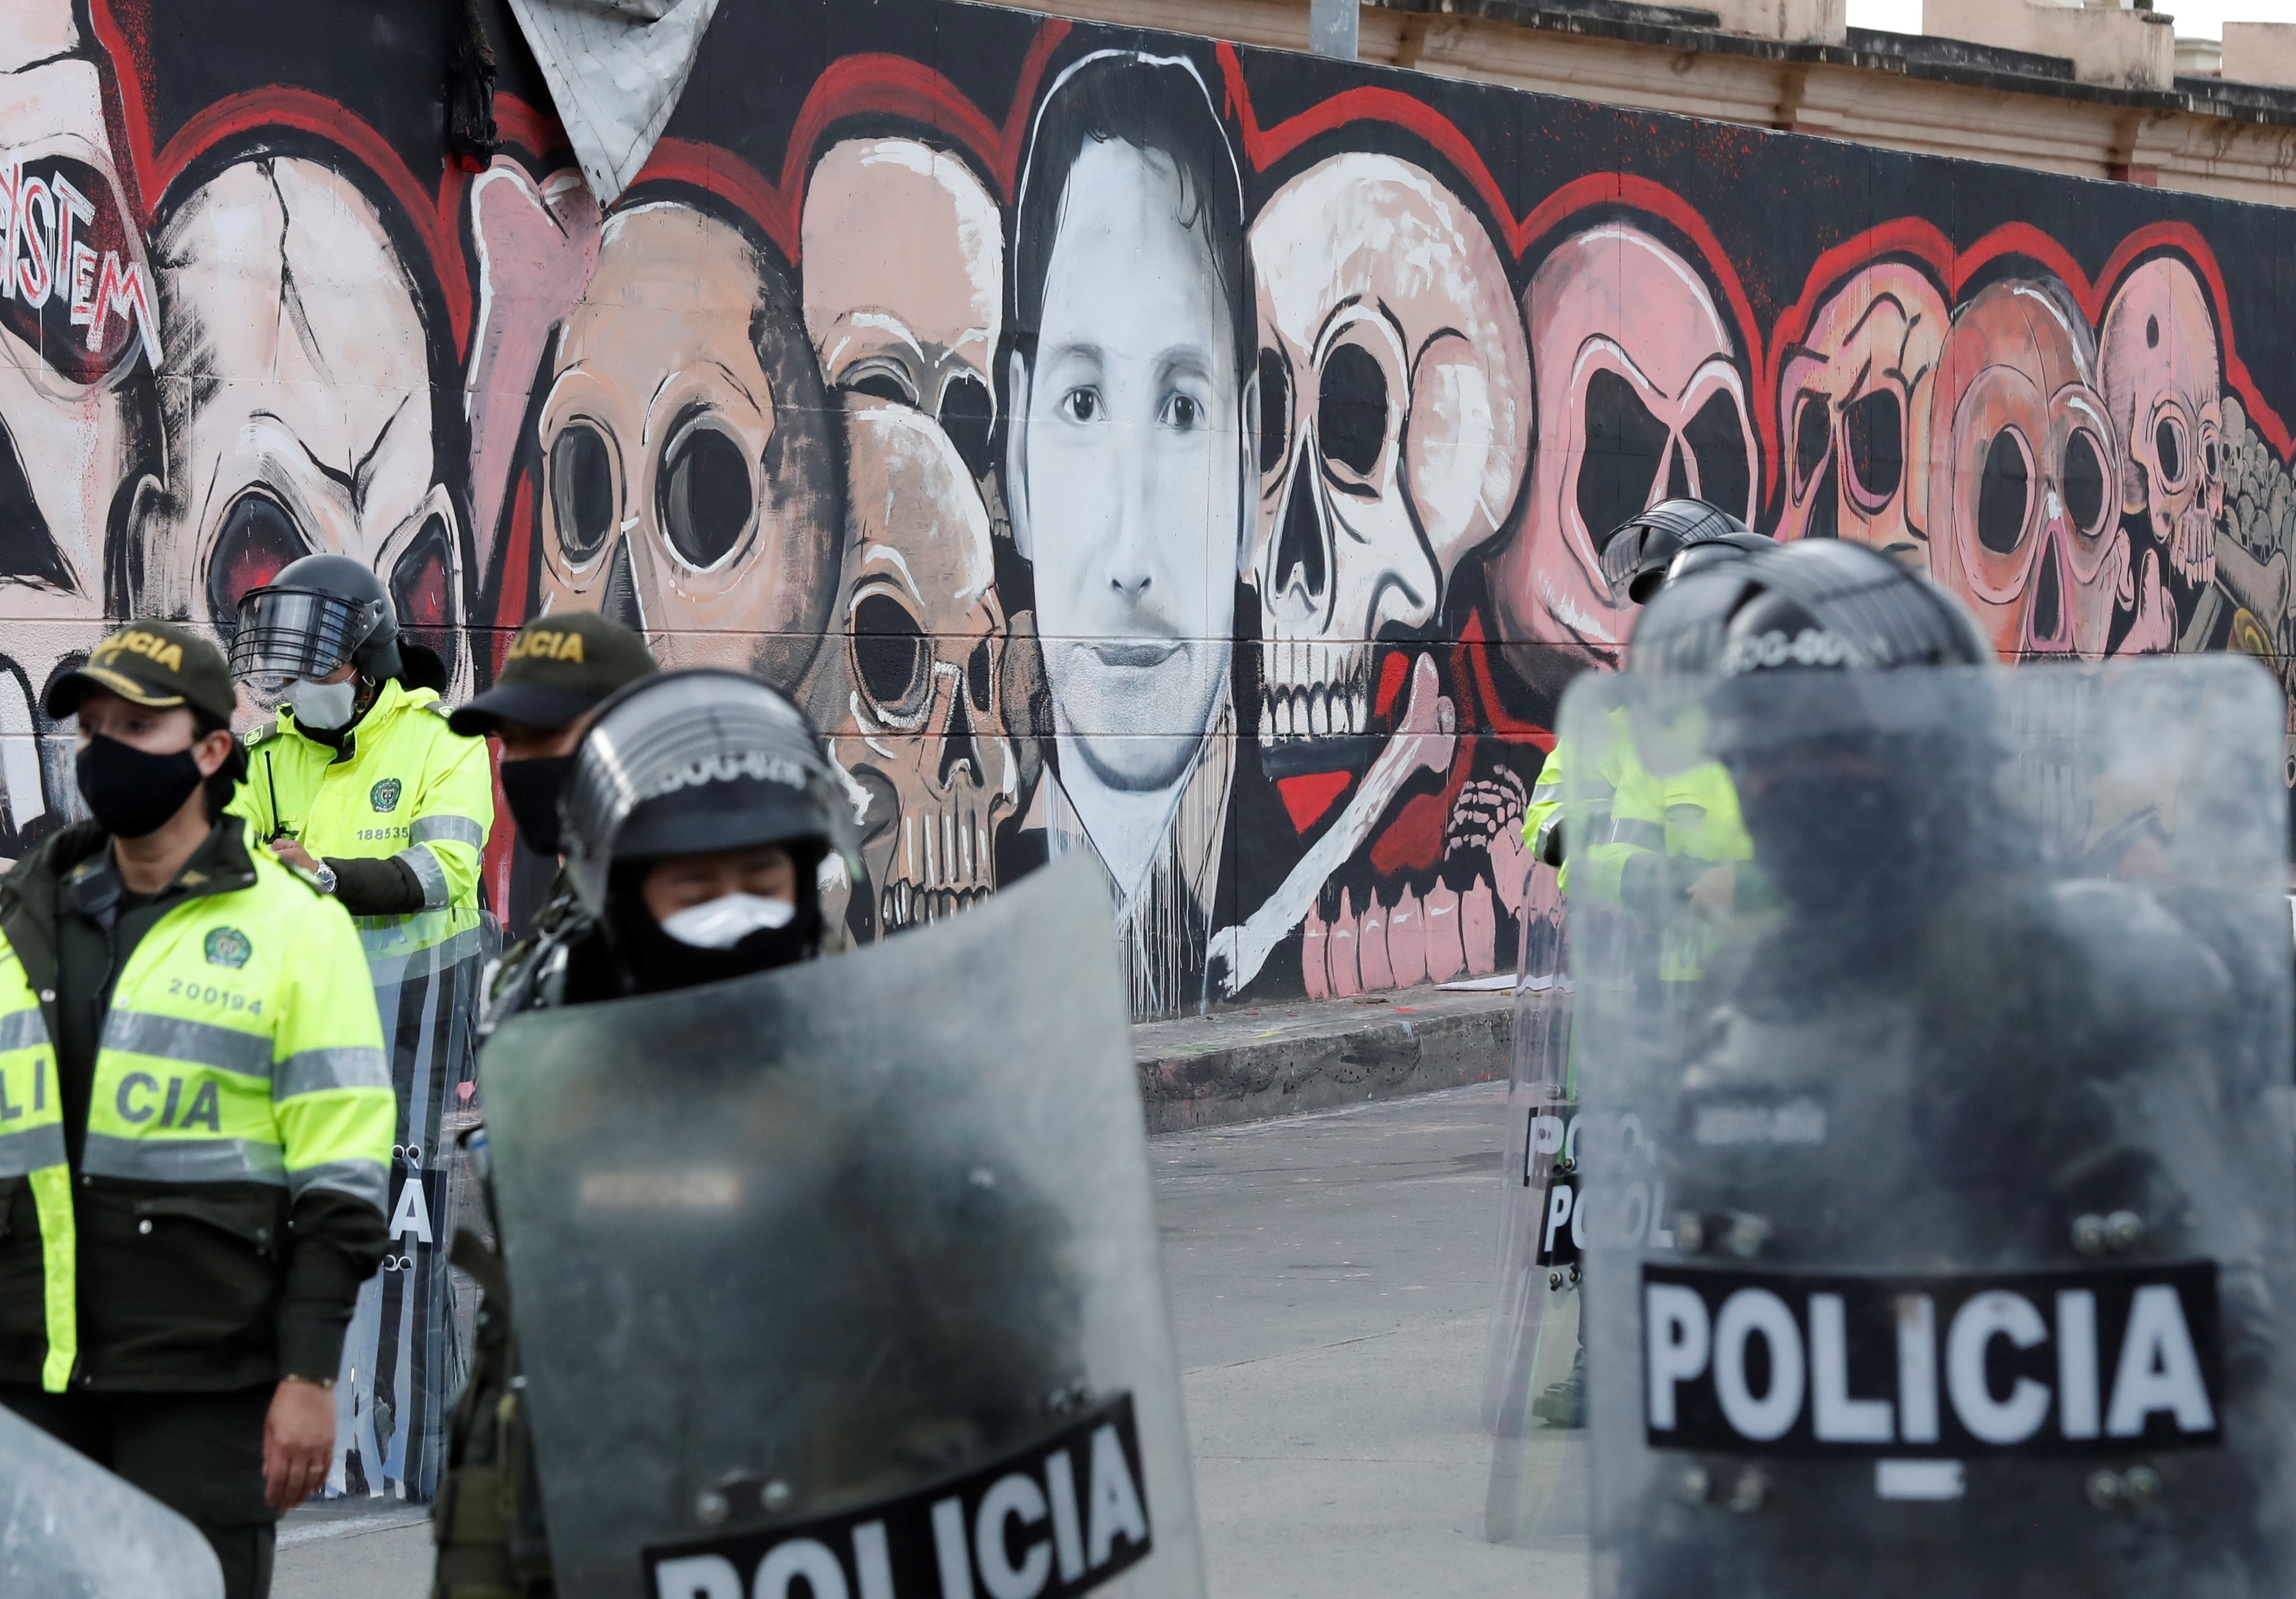 Miembros de la Policía son vistos adelante de un graffiti de Javier Ordóñez, el hombre que murió por el uso excesivo de fuerza policial. EFE/ Mauricio Dueñas Castañeda/Archivo
